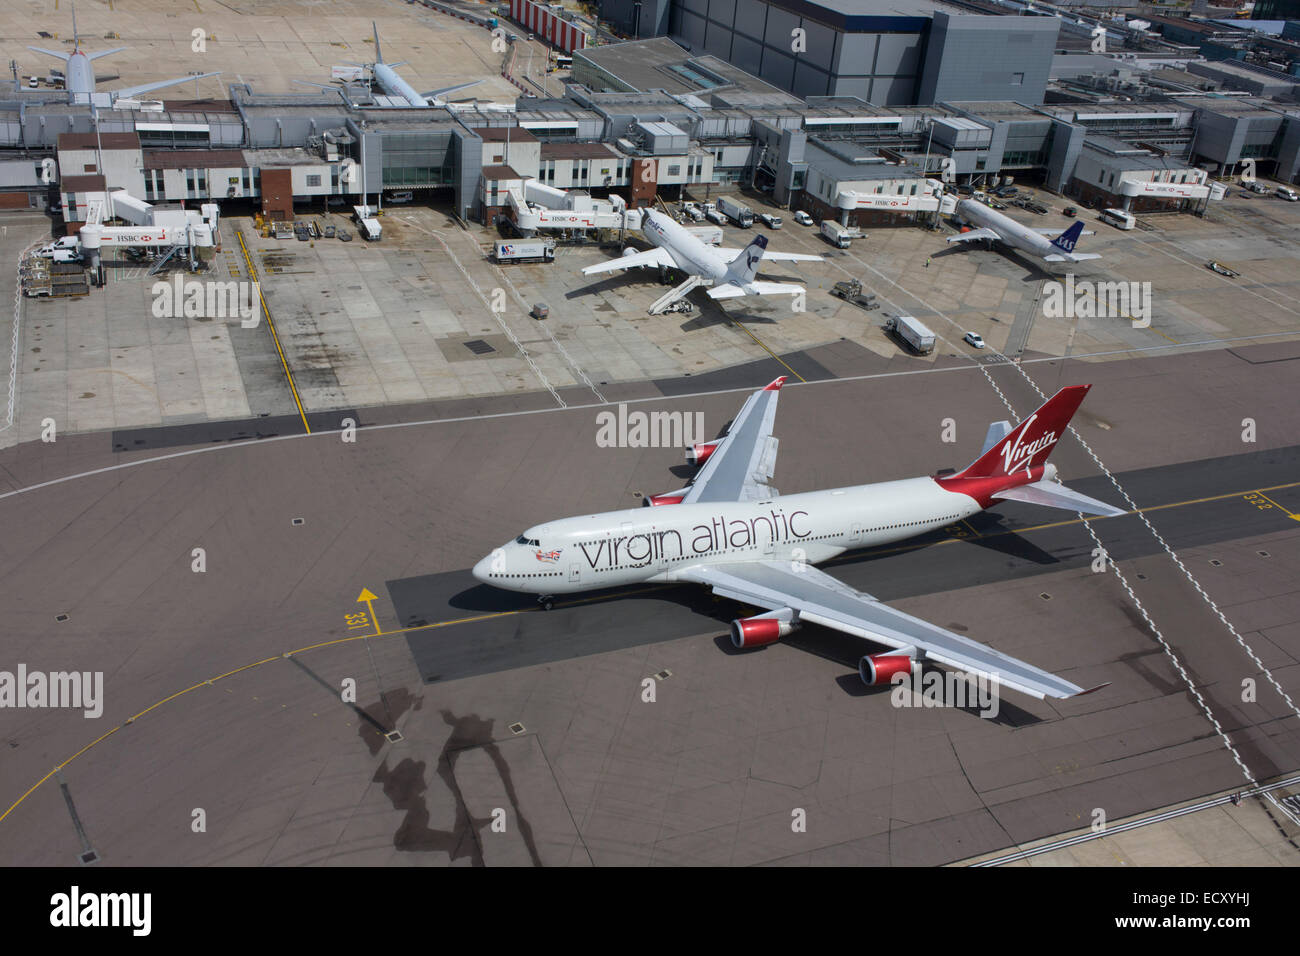 Vista aérea (desde la torre de control) de rodadura Virgin Atlantic 747 aviones en el aeropuerto de Heathrow en Londres. Foto de stock